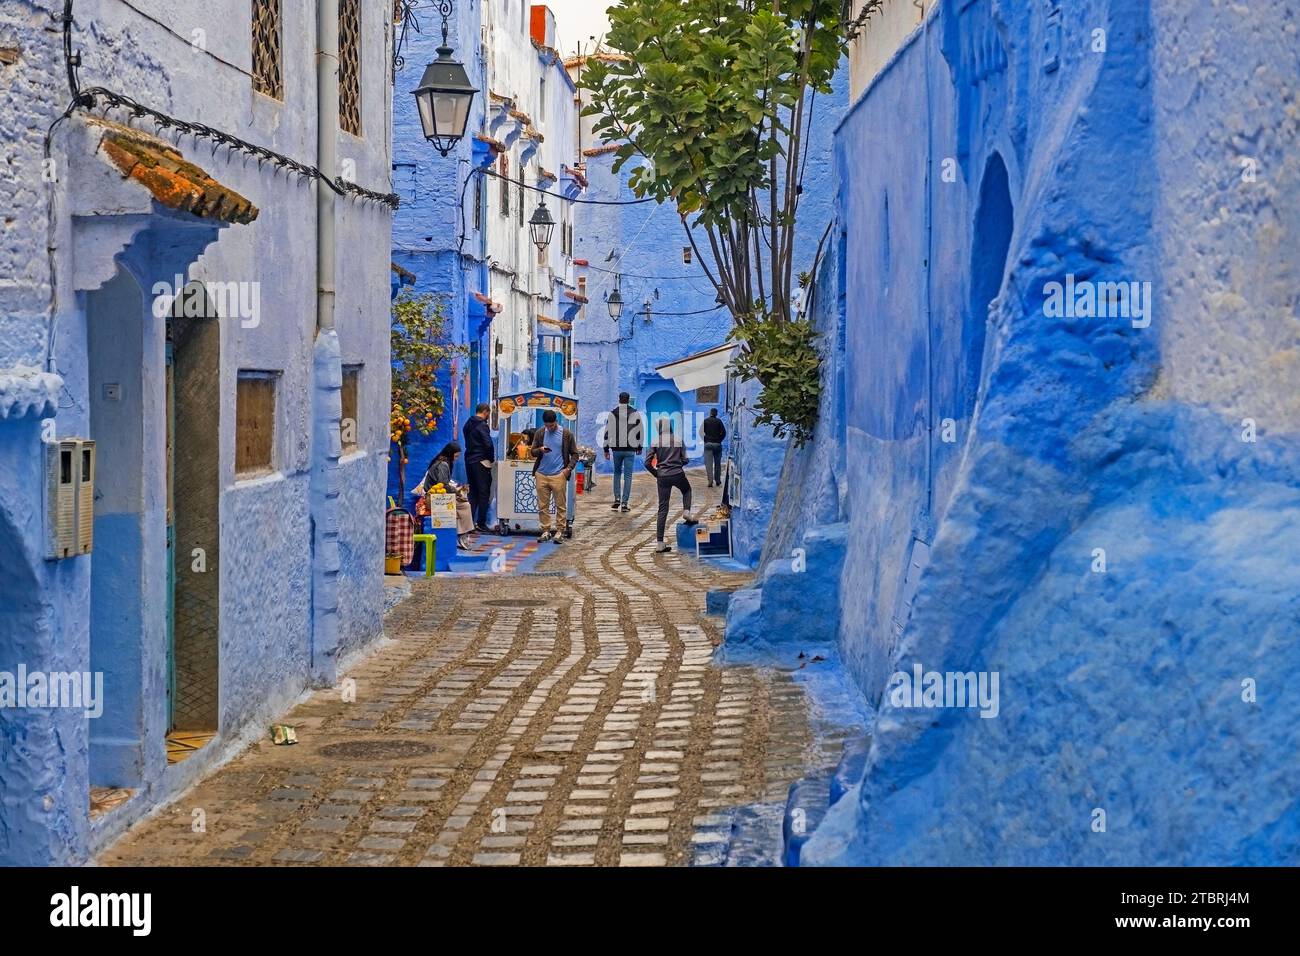 Marokkaner in engen Gassen mit blauen Häusern in Medina / historische Altstadt der Stadt Chefchaouen / Chaouen, Marokko Stockfoto